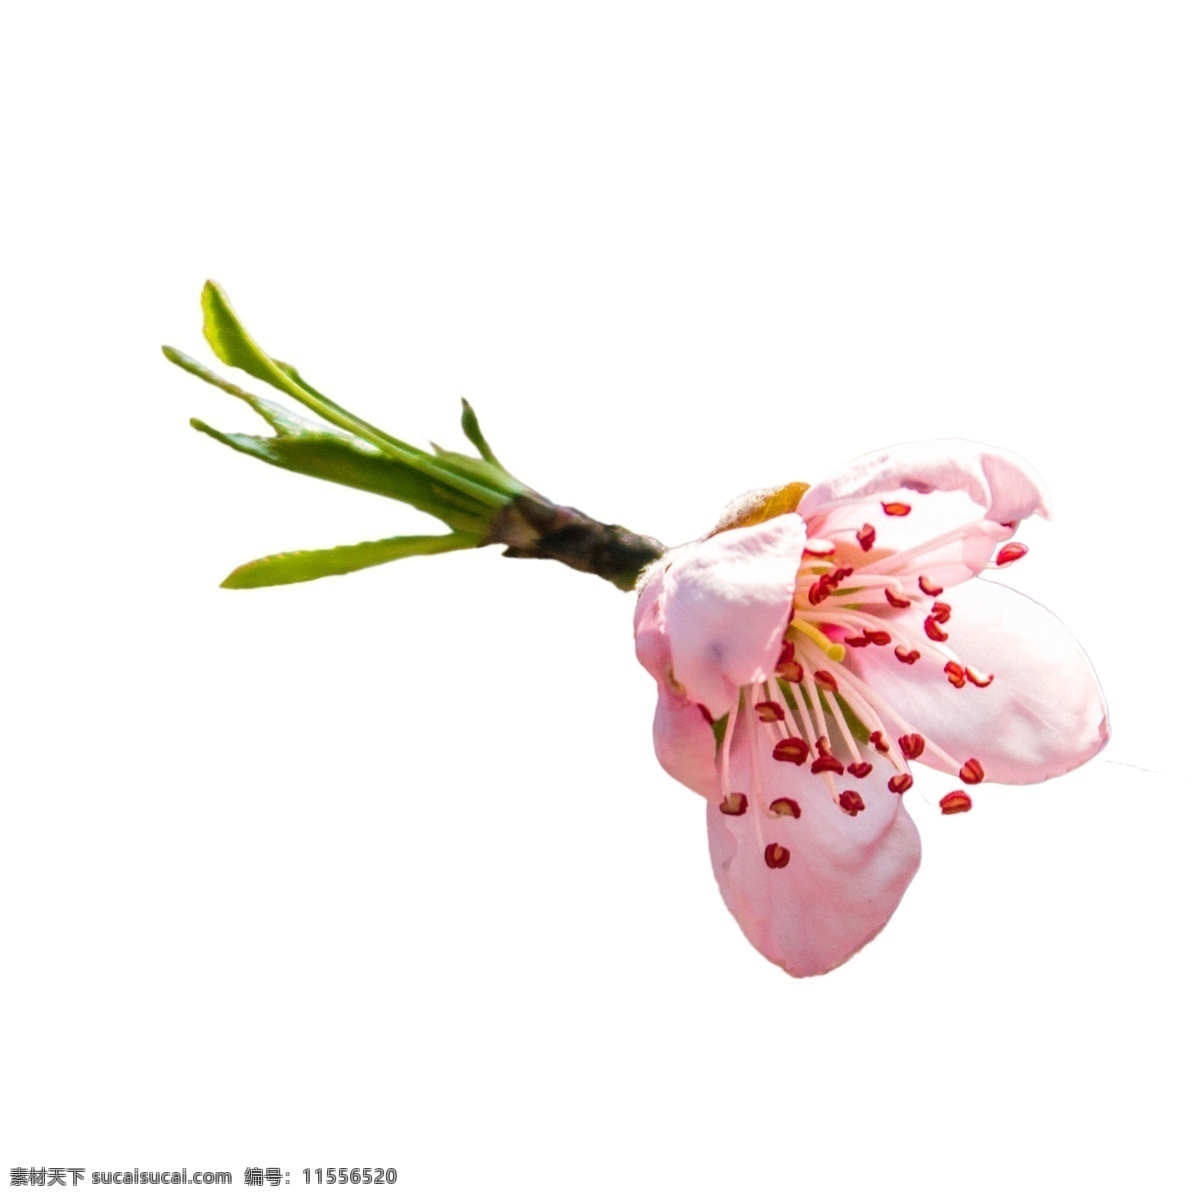 春天 美丽 粉色 花朵 粉色花朵 春天鲜花 植物鲜花 盛开的鲜花 卡通插图 创意卡通下载 插图 png图下载